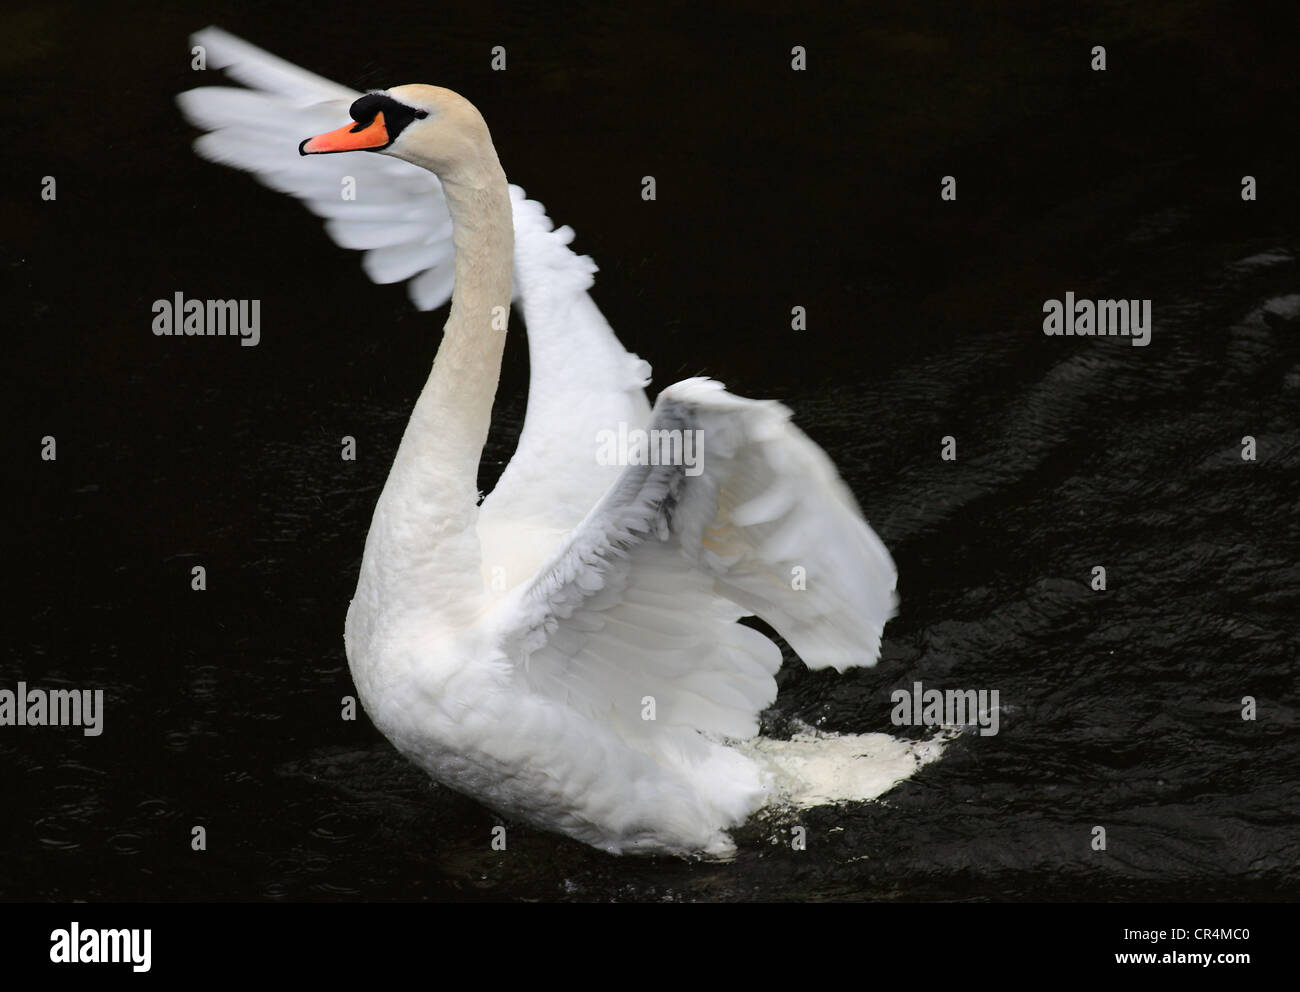 Un cygne blanc qui s'élève hors de l'eau noire et l'extension de ses ailes afin de se débarrasser de ses plumes avec son bec en l'air. Banque D'Images